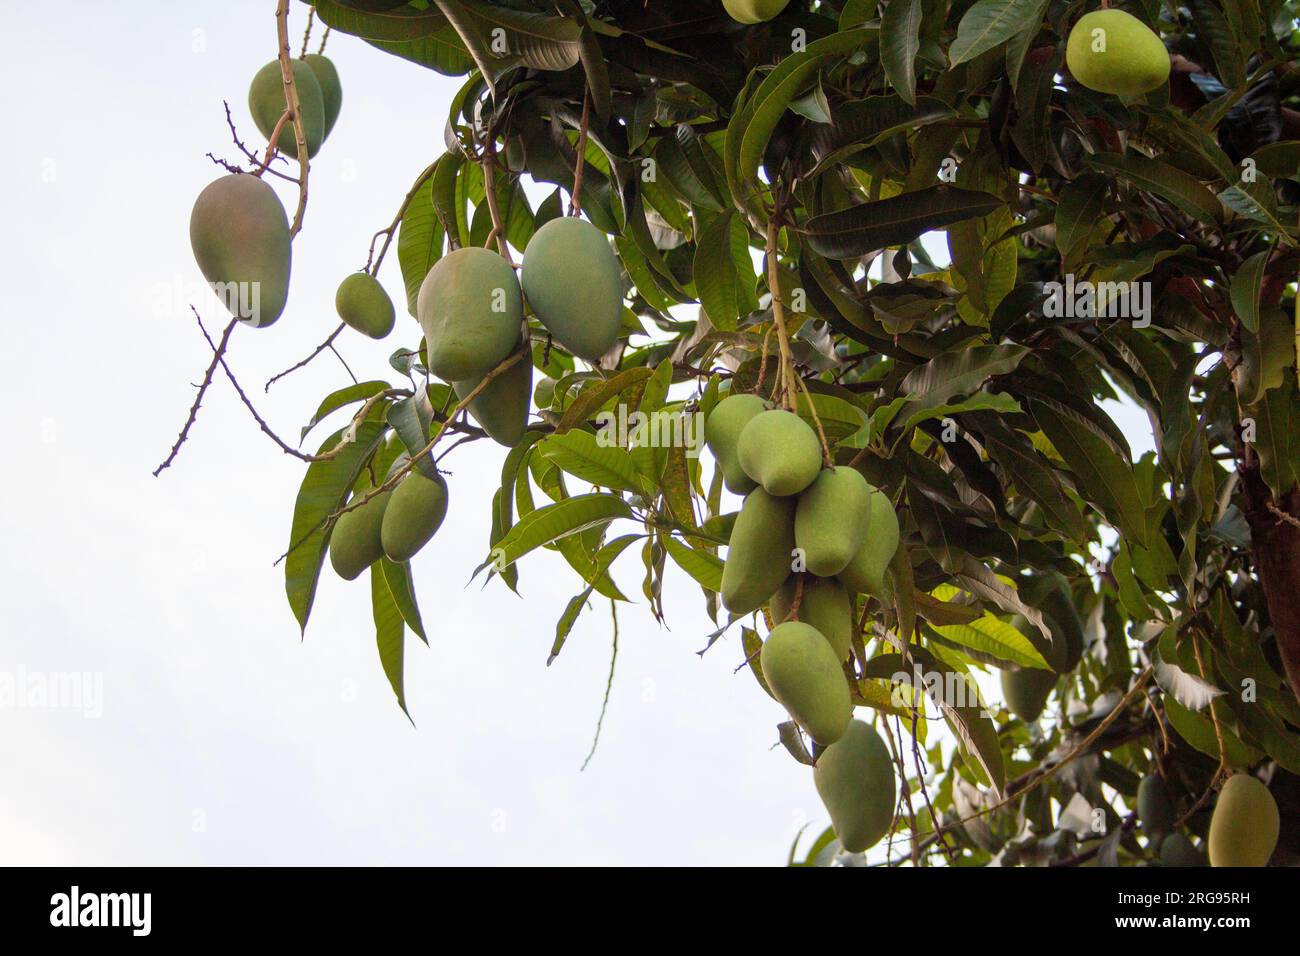 Frutas de mango en un árbol fotografías e imágenes de alta resolución -  Página 2 - Alamy